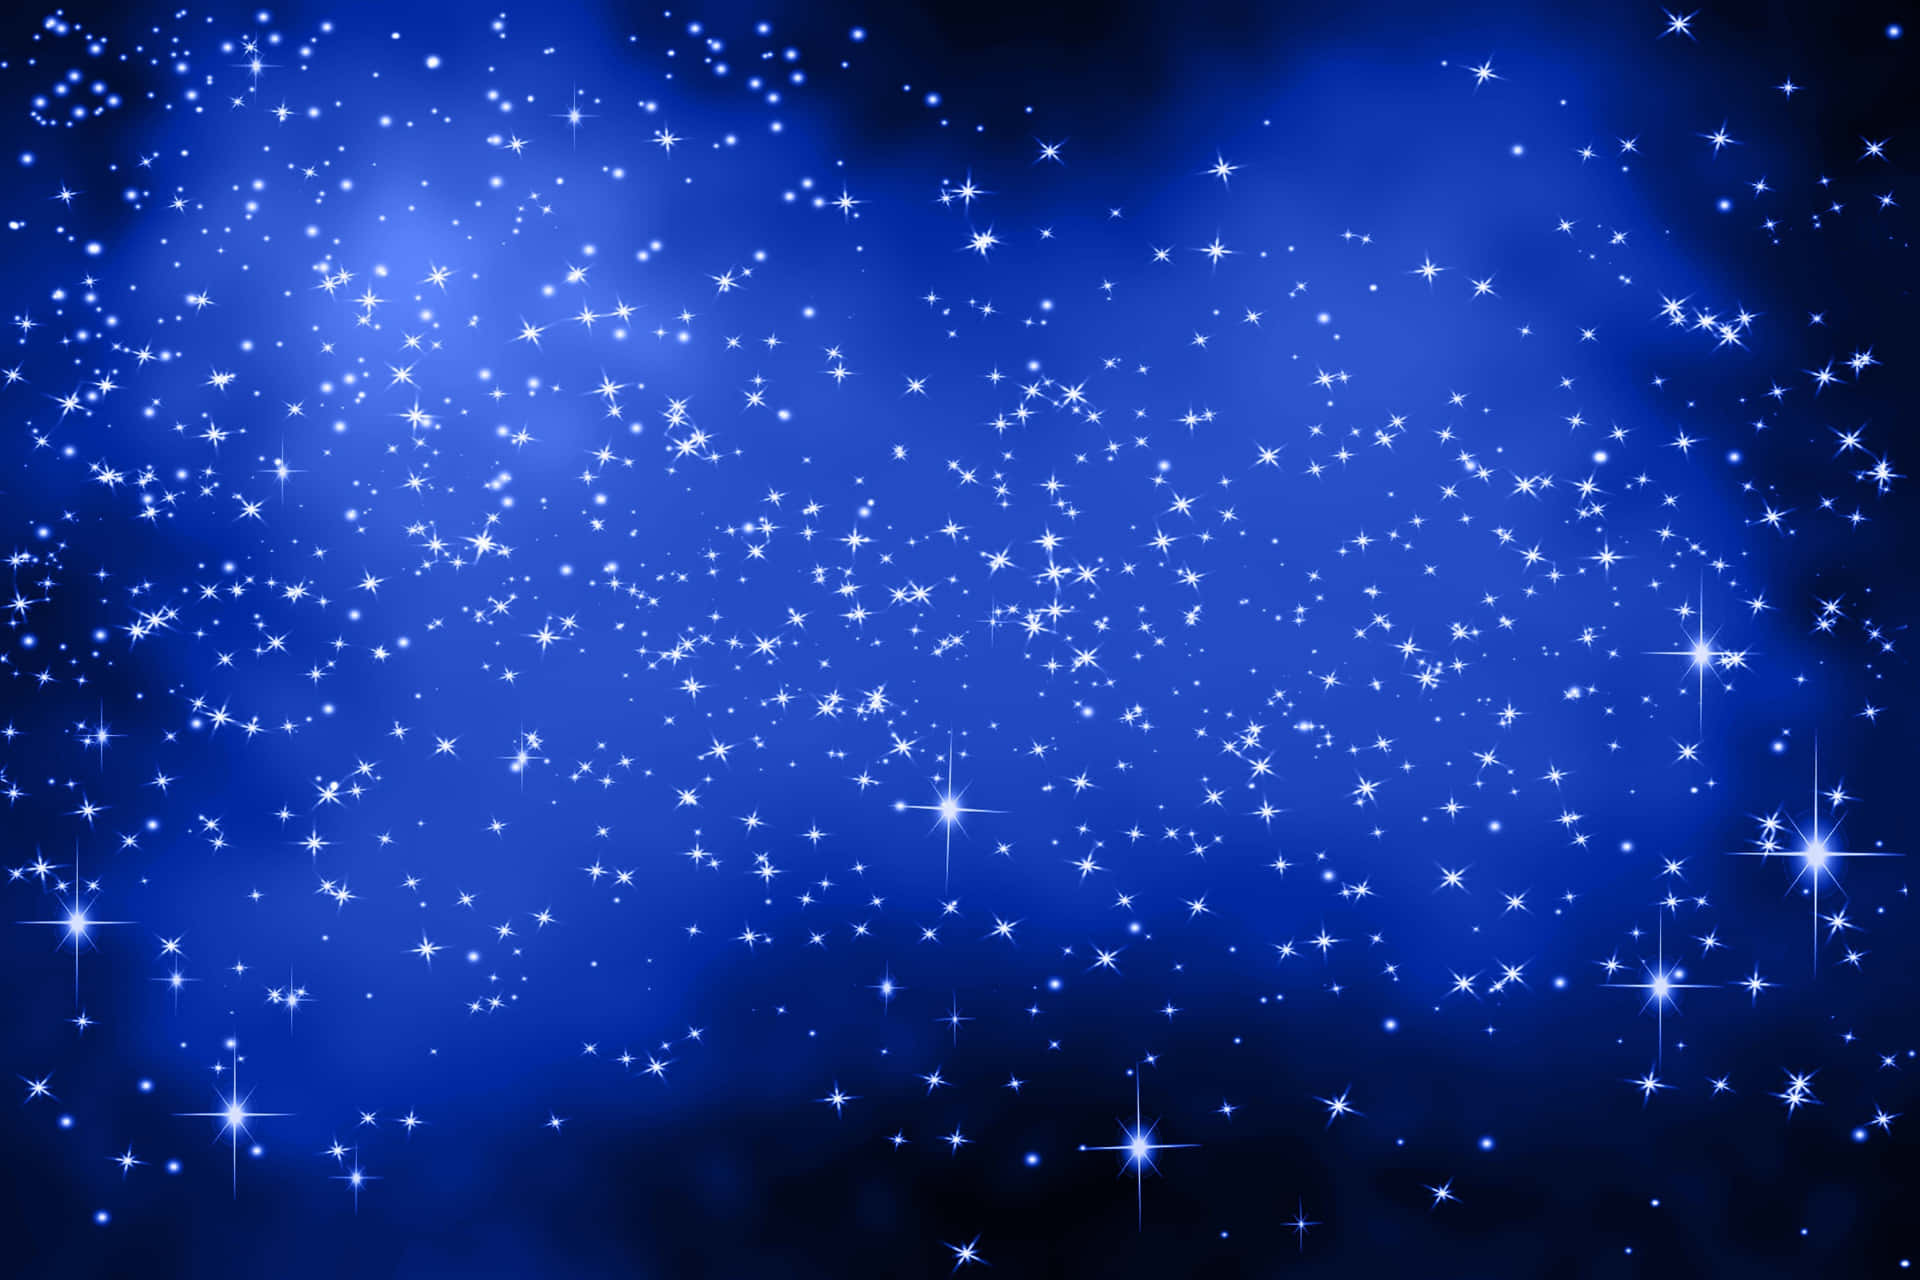 A big blue star against a clear night sky